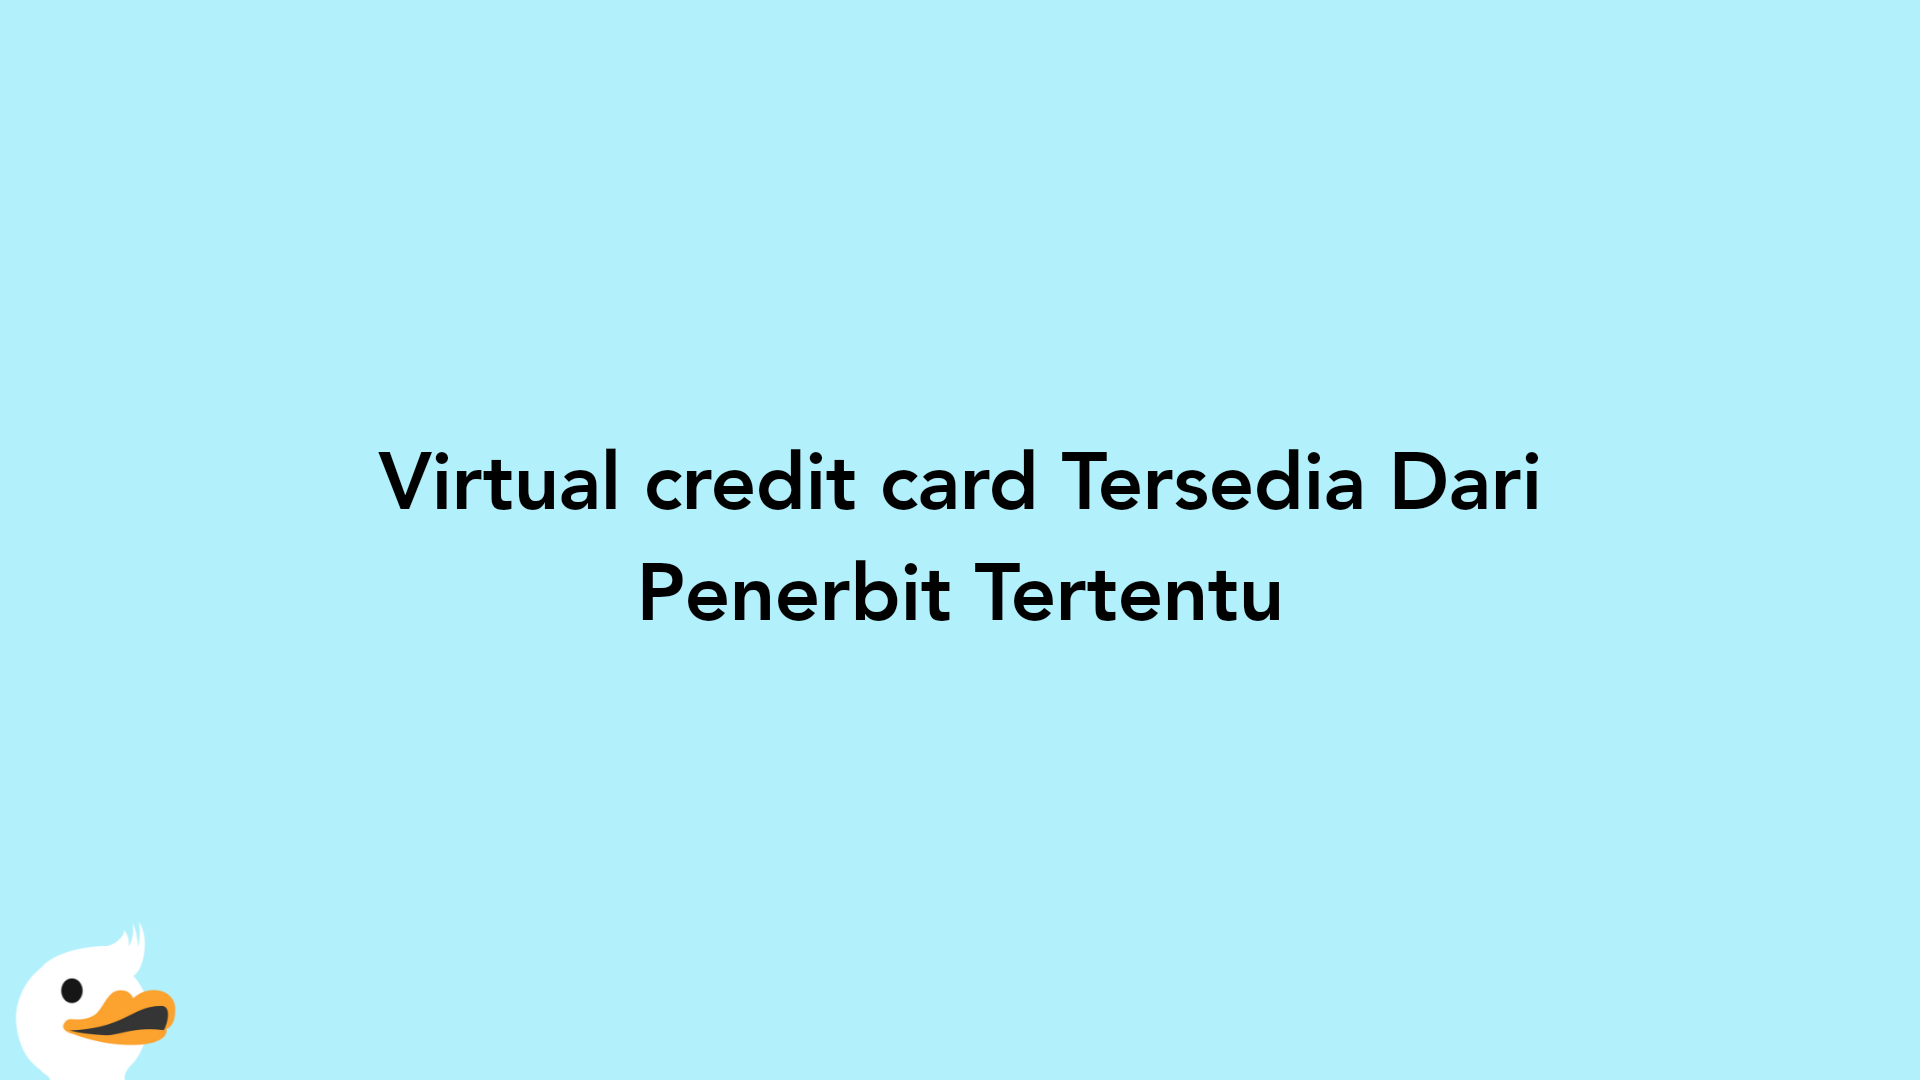 Virtual credit card Tersedia Dari Penerbit Tertentu